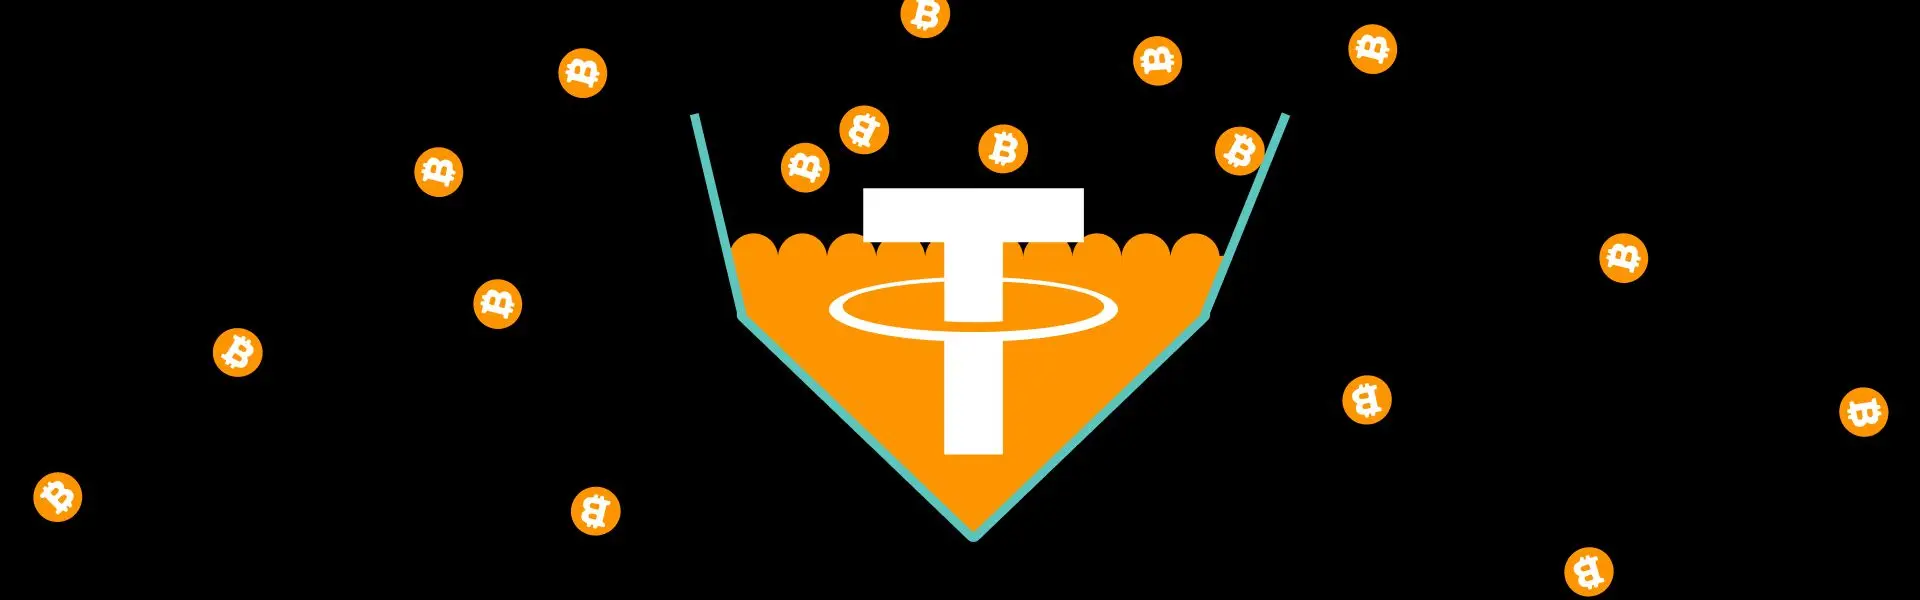 Компанія Tether успішно накопичила 2,8 млрд доларів у криптовалюті біткоїн.